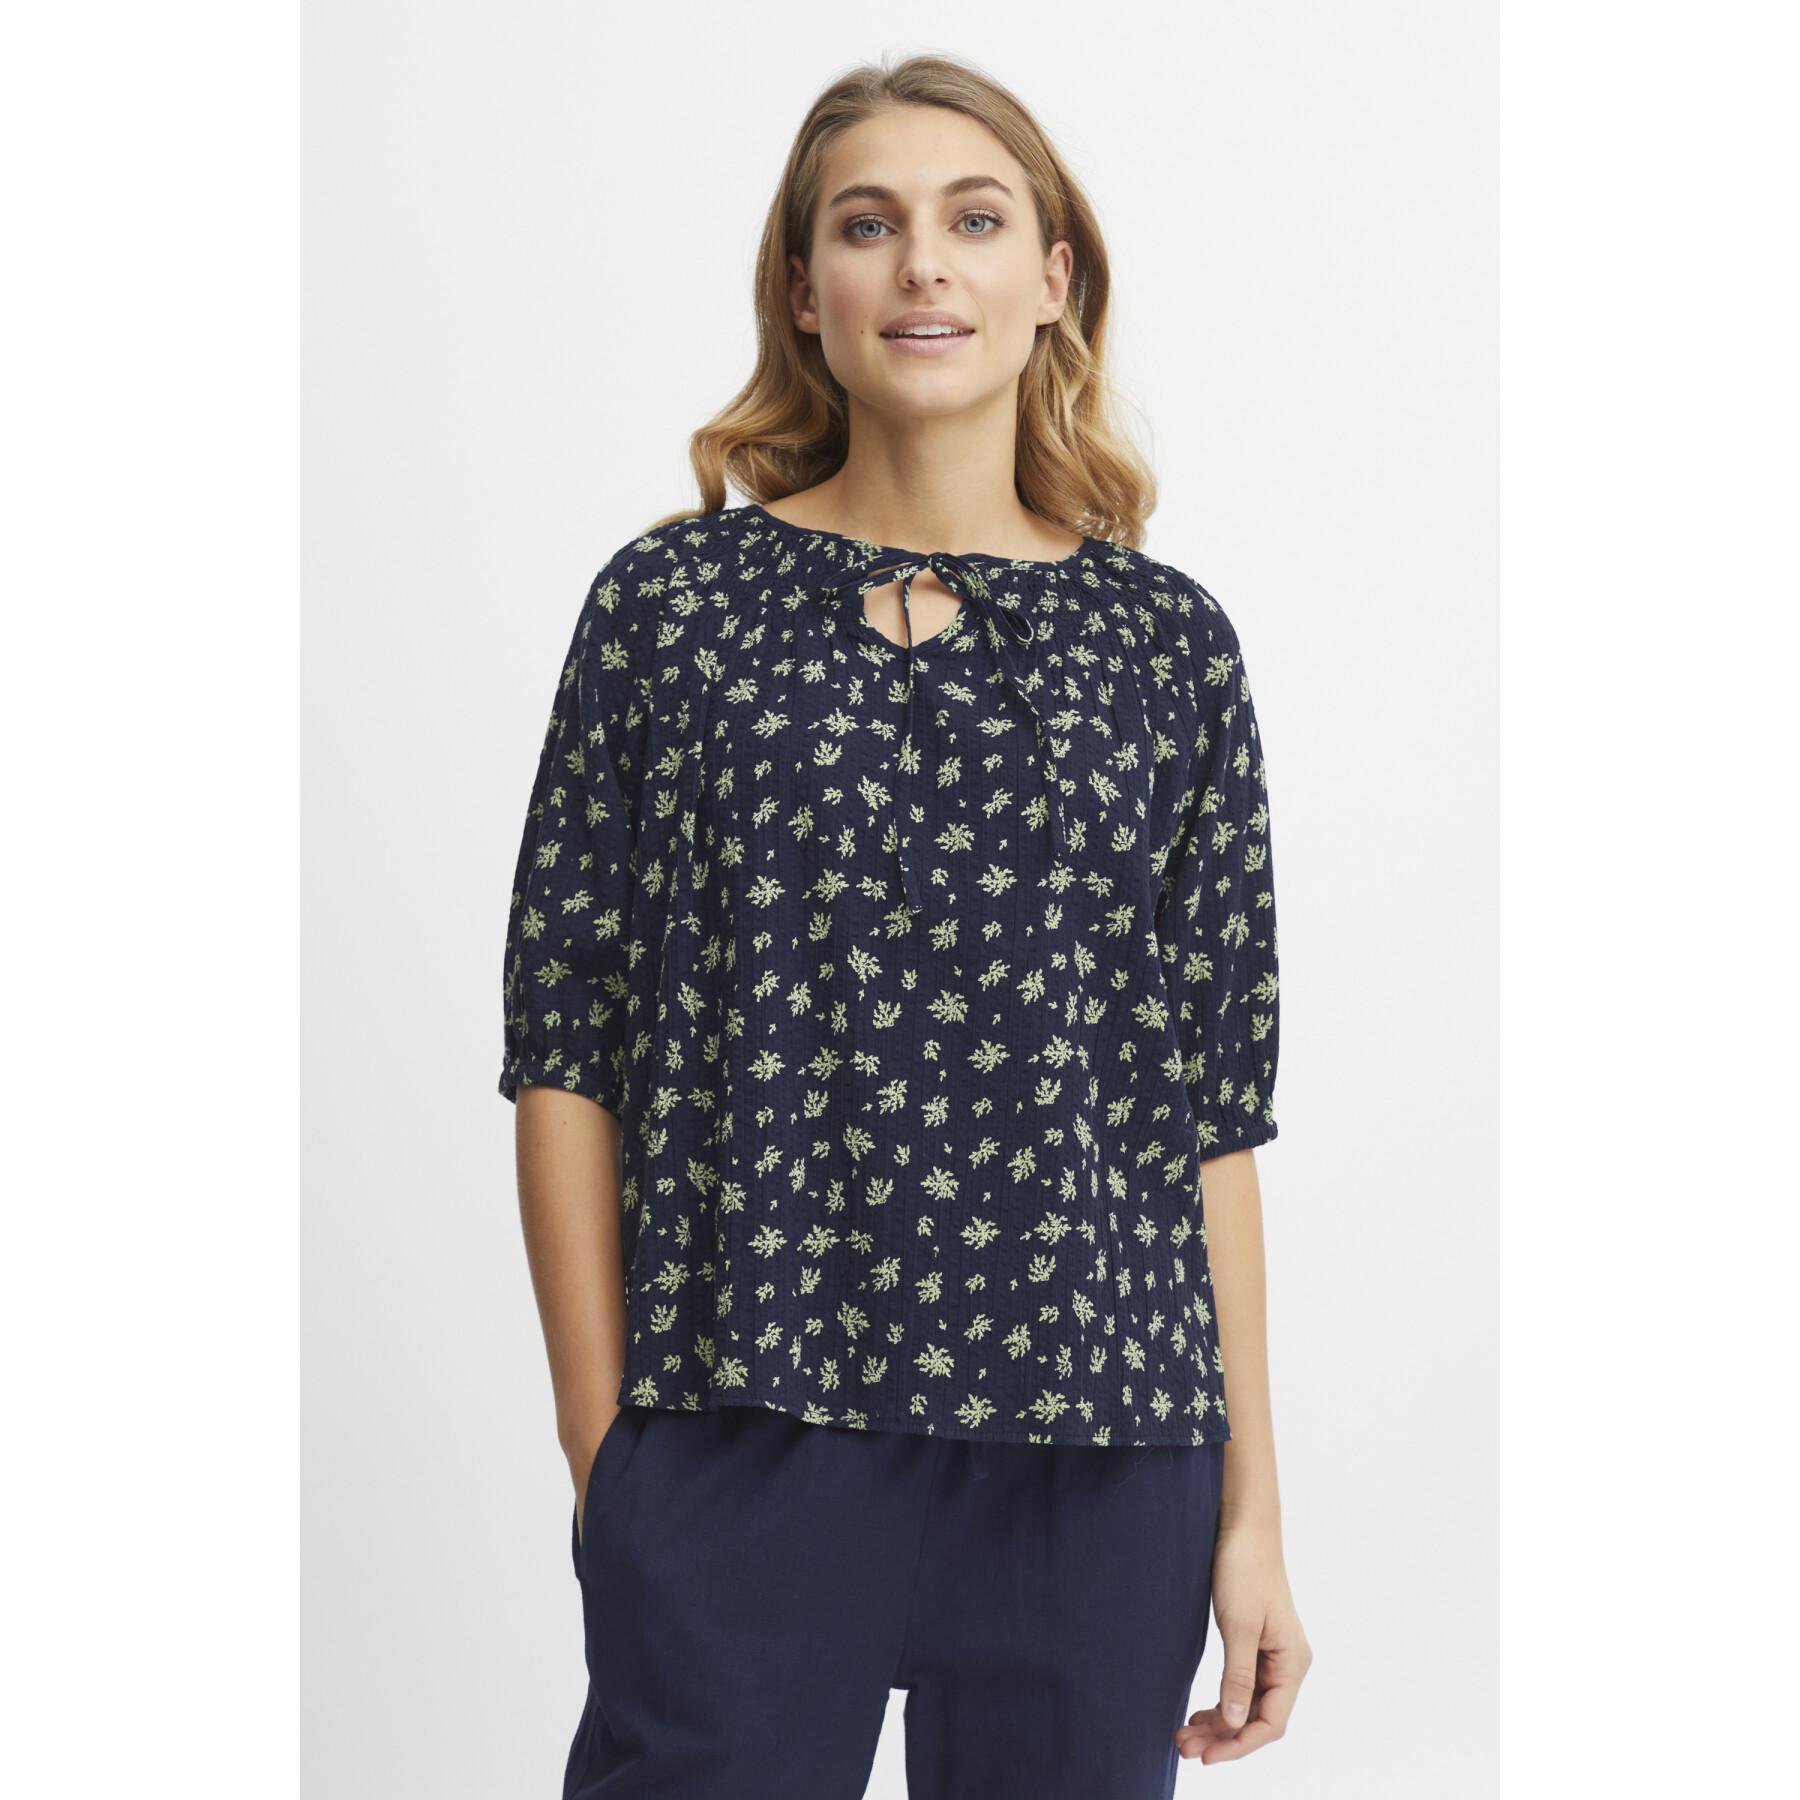 Sanya fransa Women\'s blouse